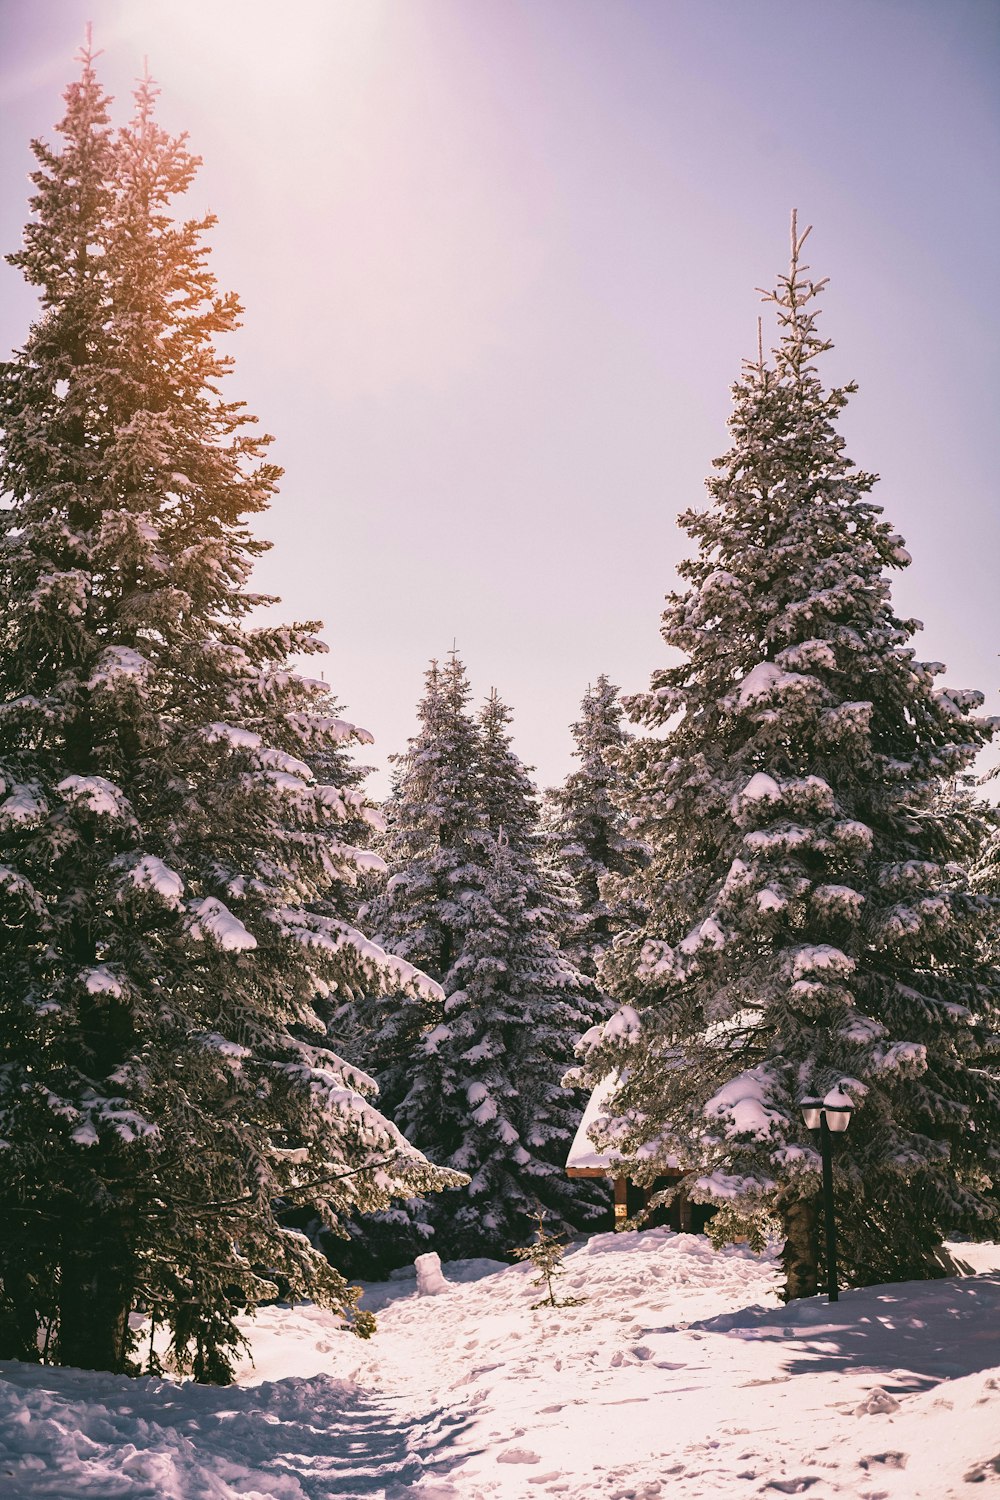 Cây thông phủ đầy tuyết trông như một bức tranh khung cảnh mùa đông. Những cành lá vàng rực rỡ trên nền trắng tuyết làm cho hình ảnh này trở nên rực rỡ, rạng rỡ và đầy sức sống. Hãy cùng chiêm ngưỡng hình ảnh này để thư giãn và tìm lại sự cân bằng bên trong.